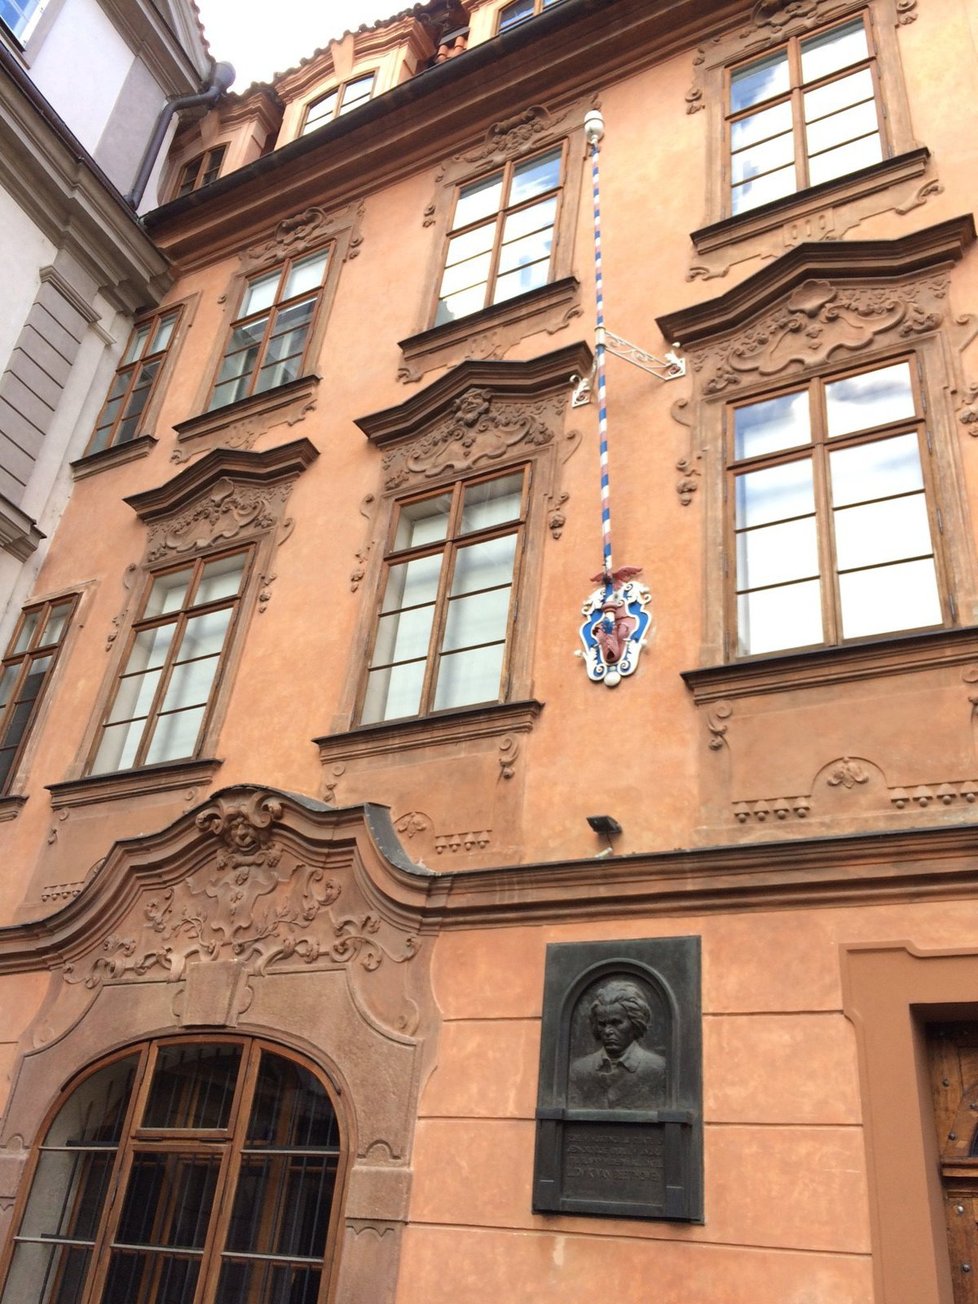 V Beethovenově paláci na Malé Straně bydlí pražská smetánka. Nejdražší byt tu stál 51 milionů.